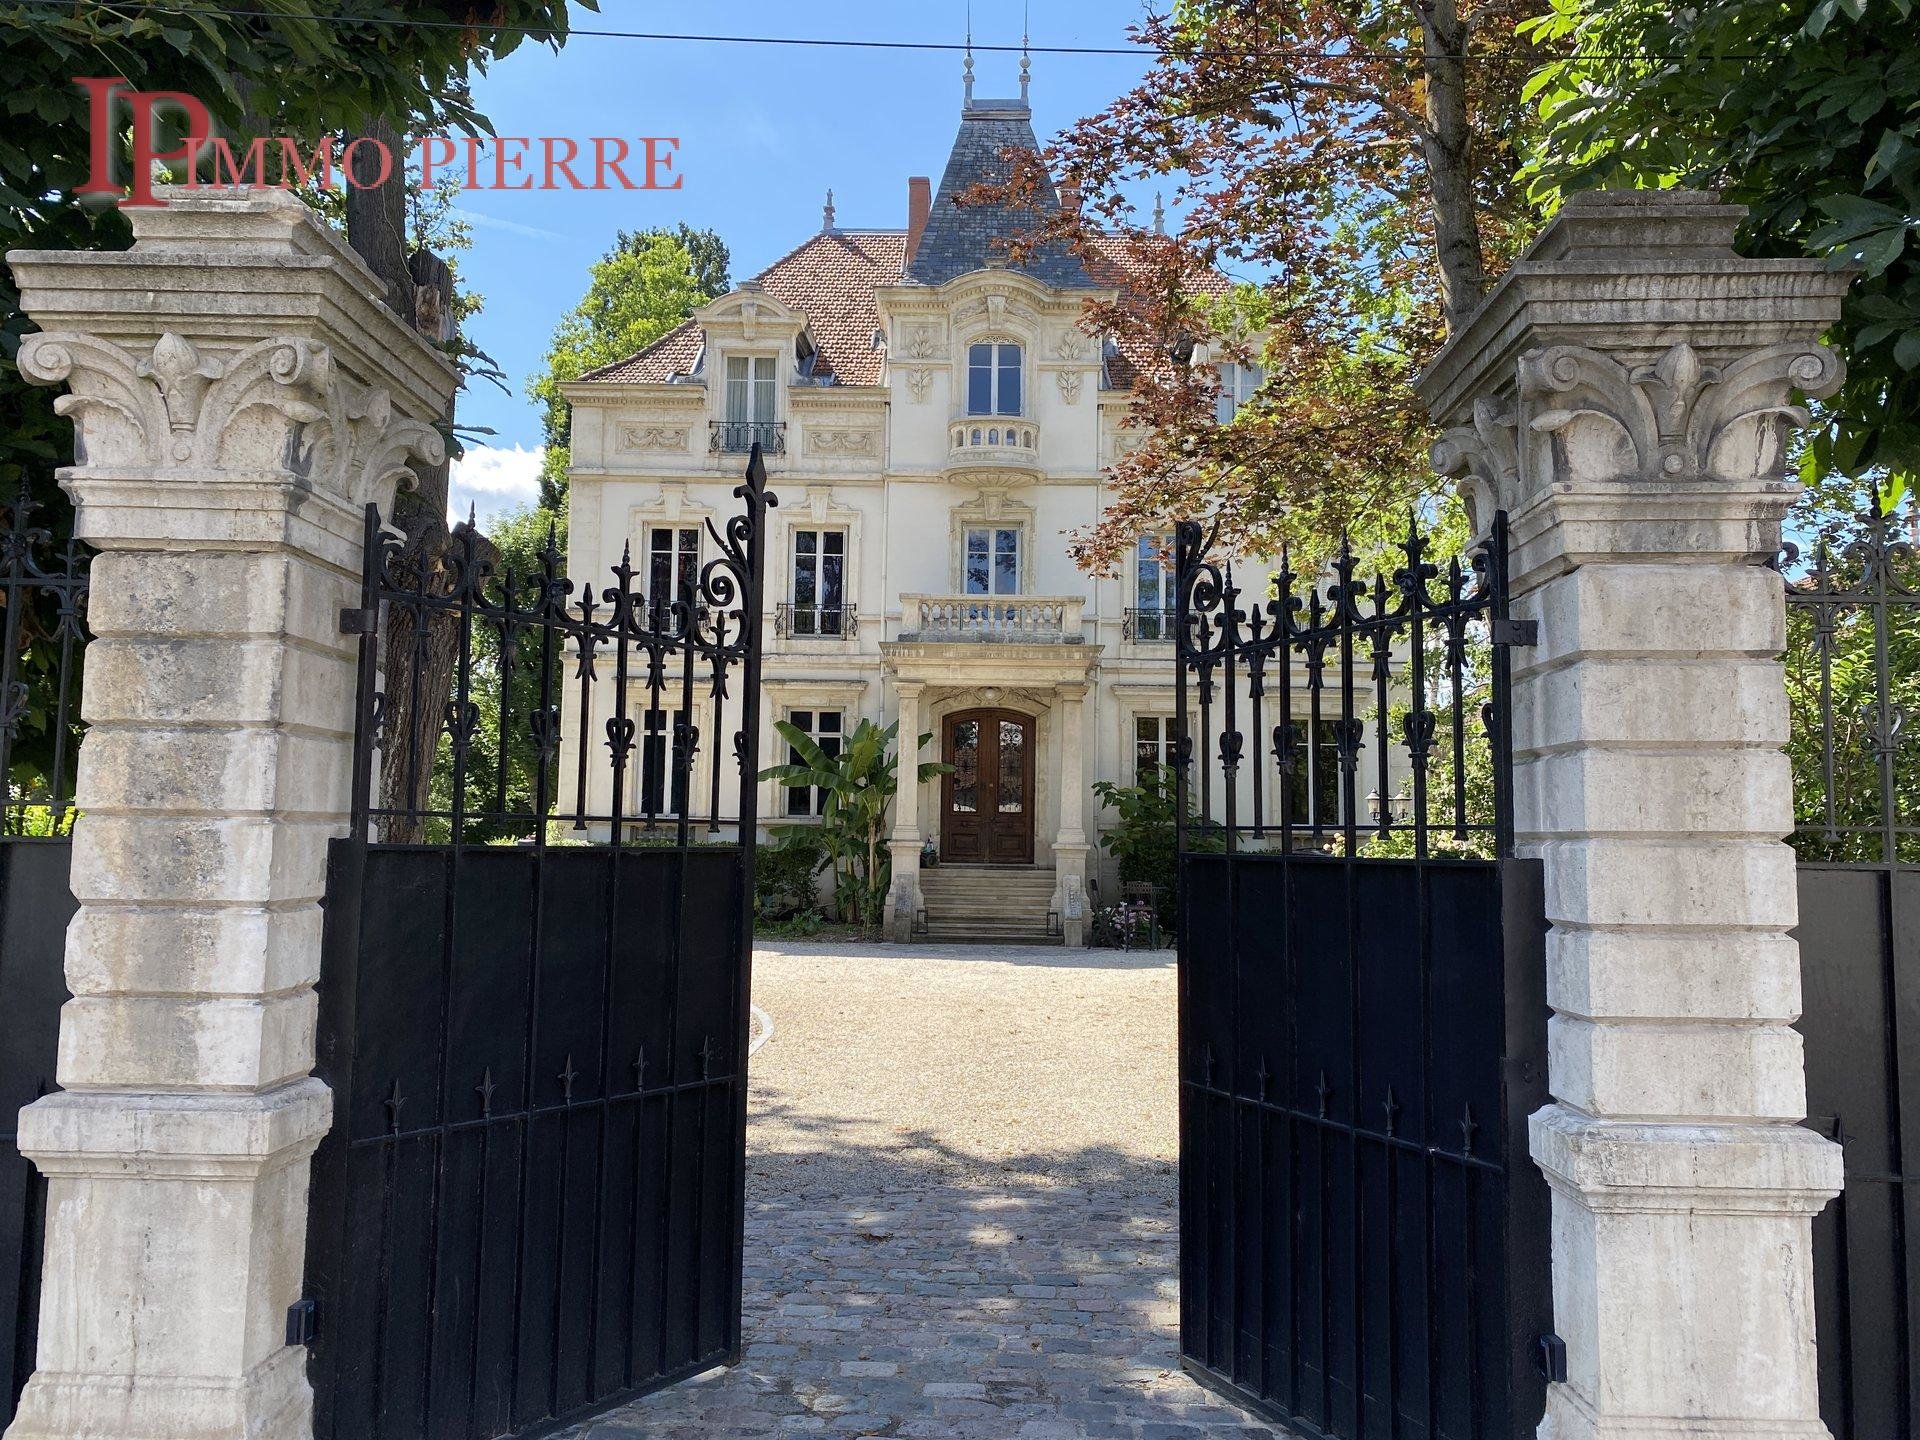 A vendre : une propriété du XIXe siècle pour le prix d'un appartement parisien